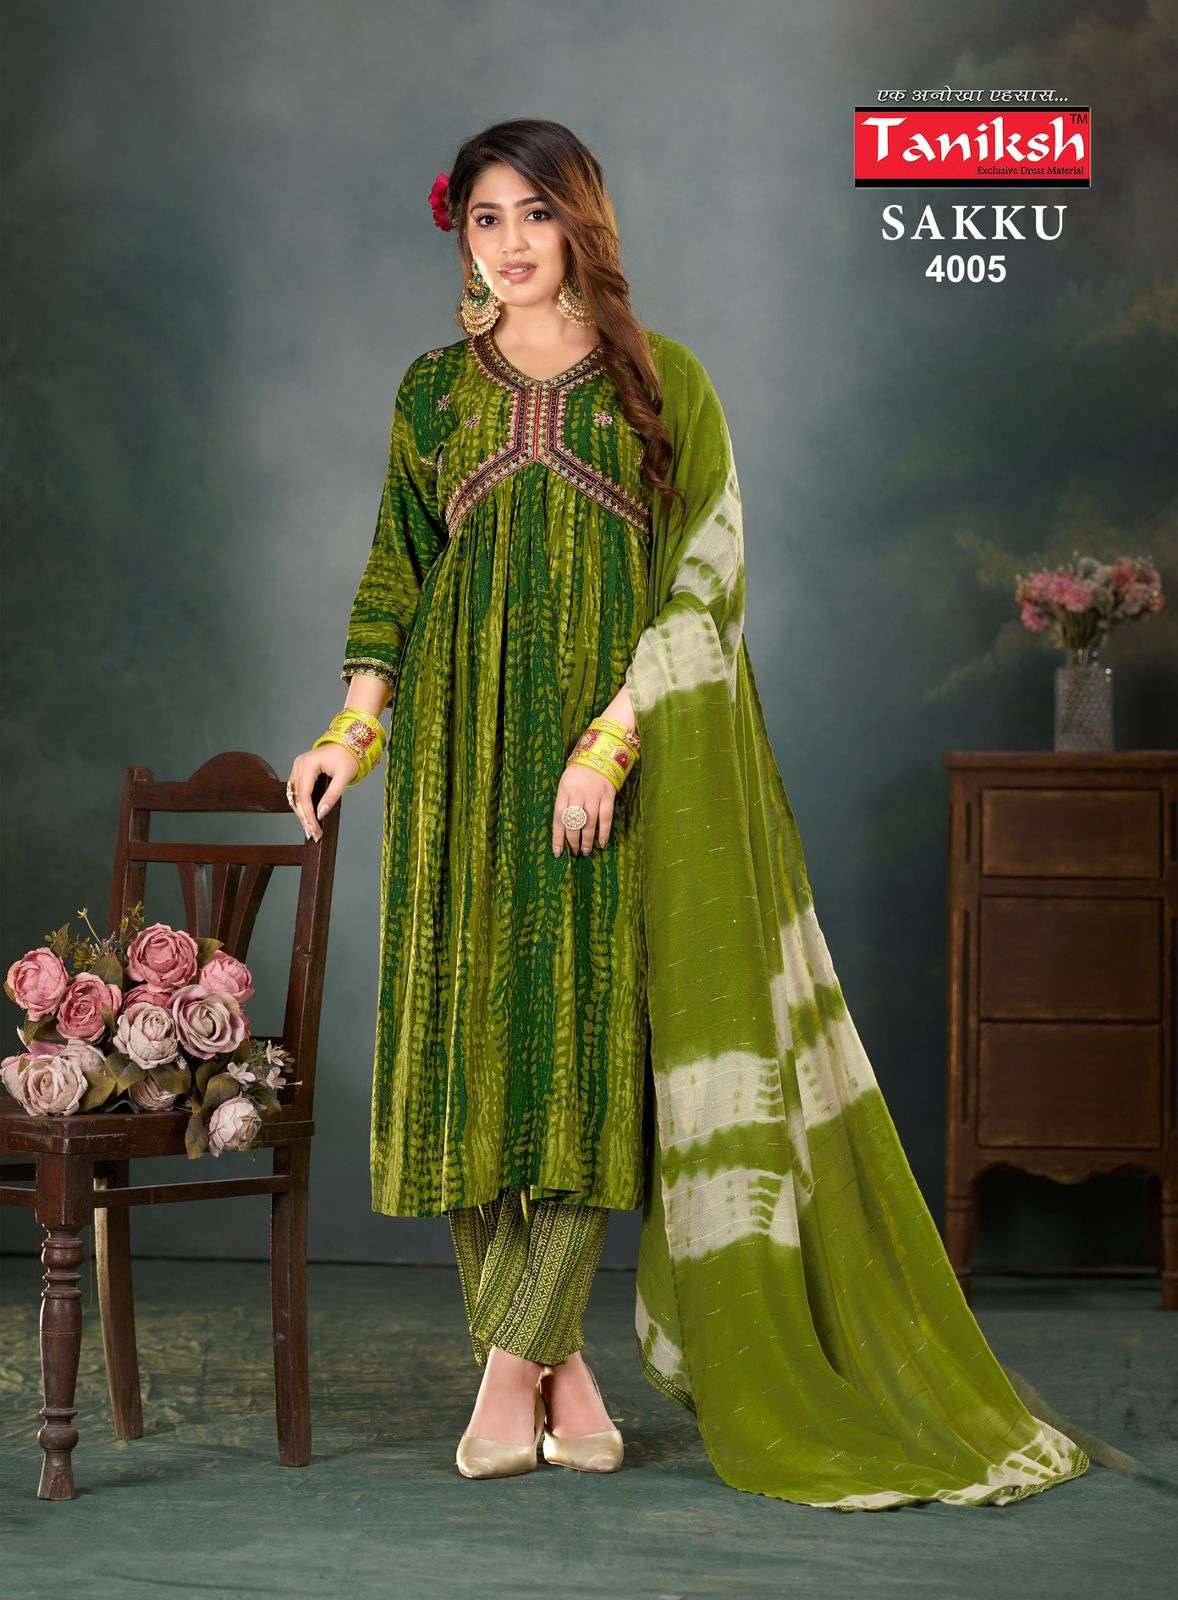 taniksh sakku vol-4 4001-4008 series latest patiyala readymade designer kurti set wholesaler surat gujarat